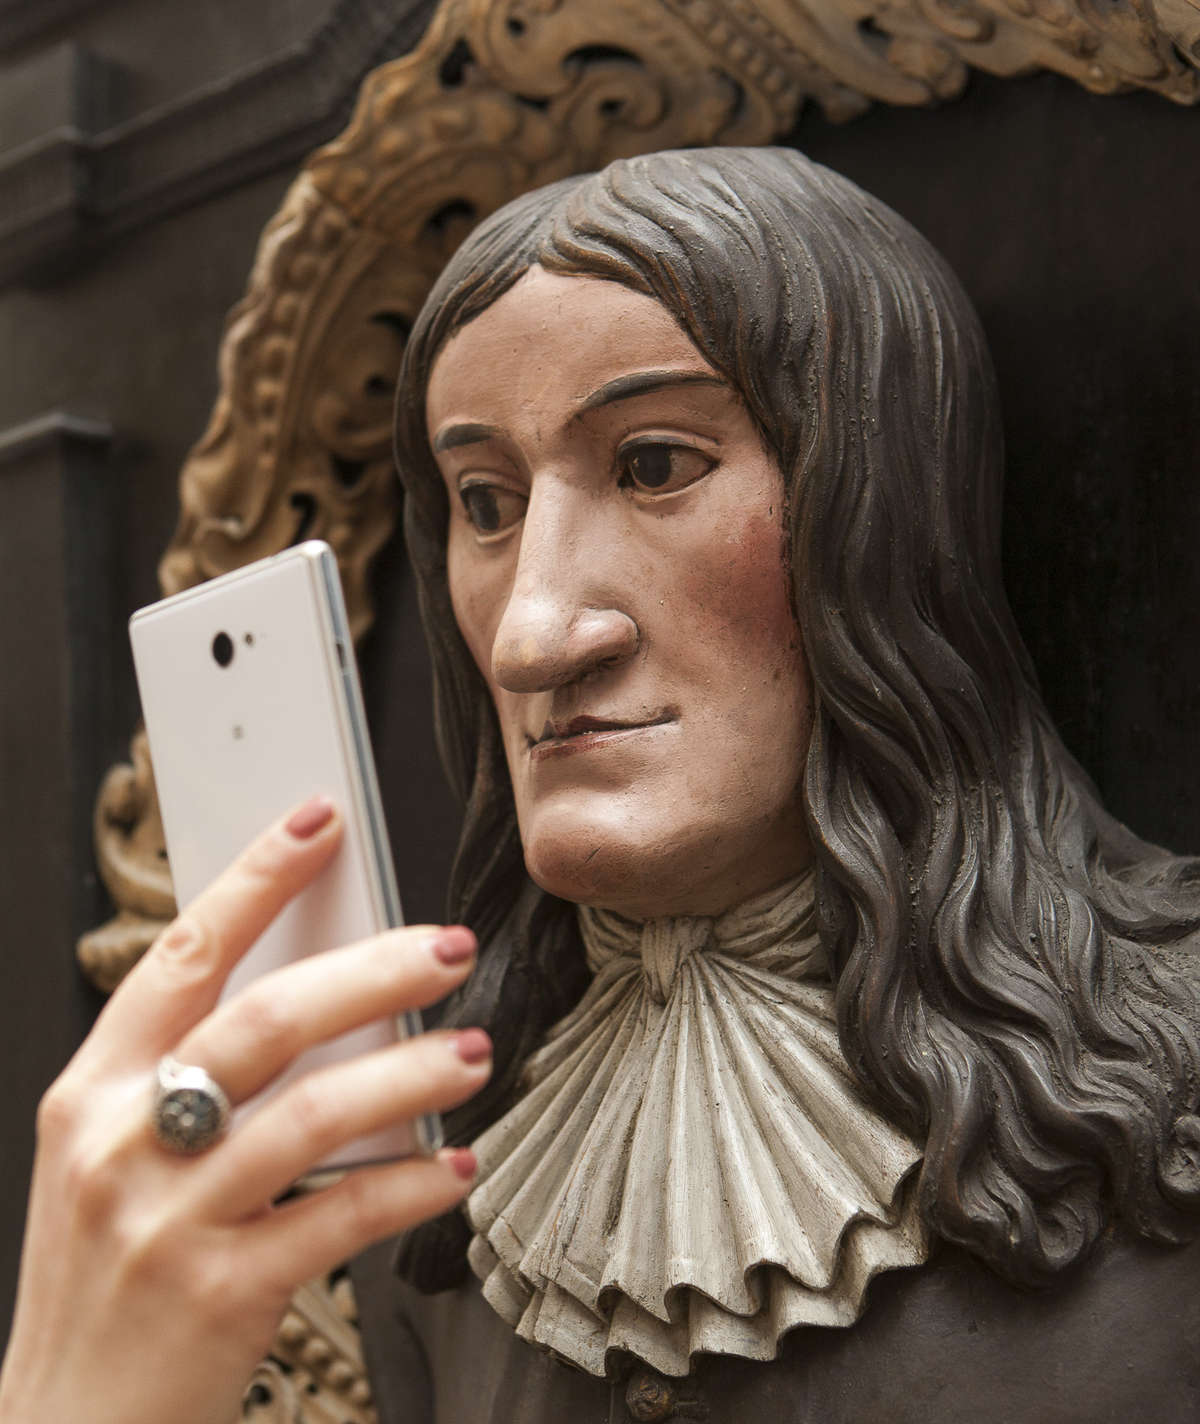 Selfie z Kopernikiem? Czemu nie? Museum Selfie Day